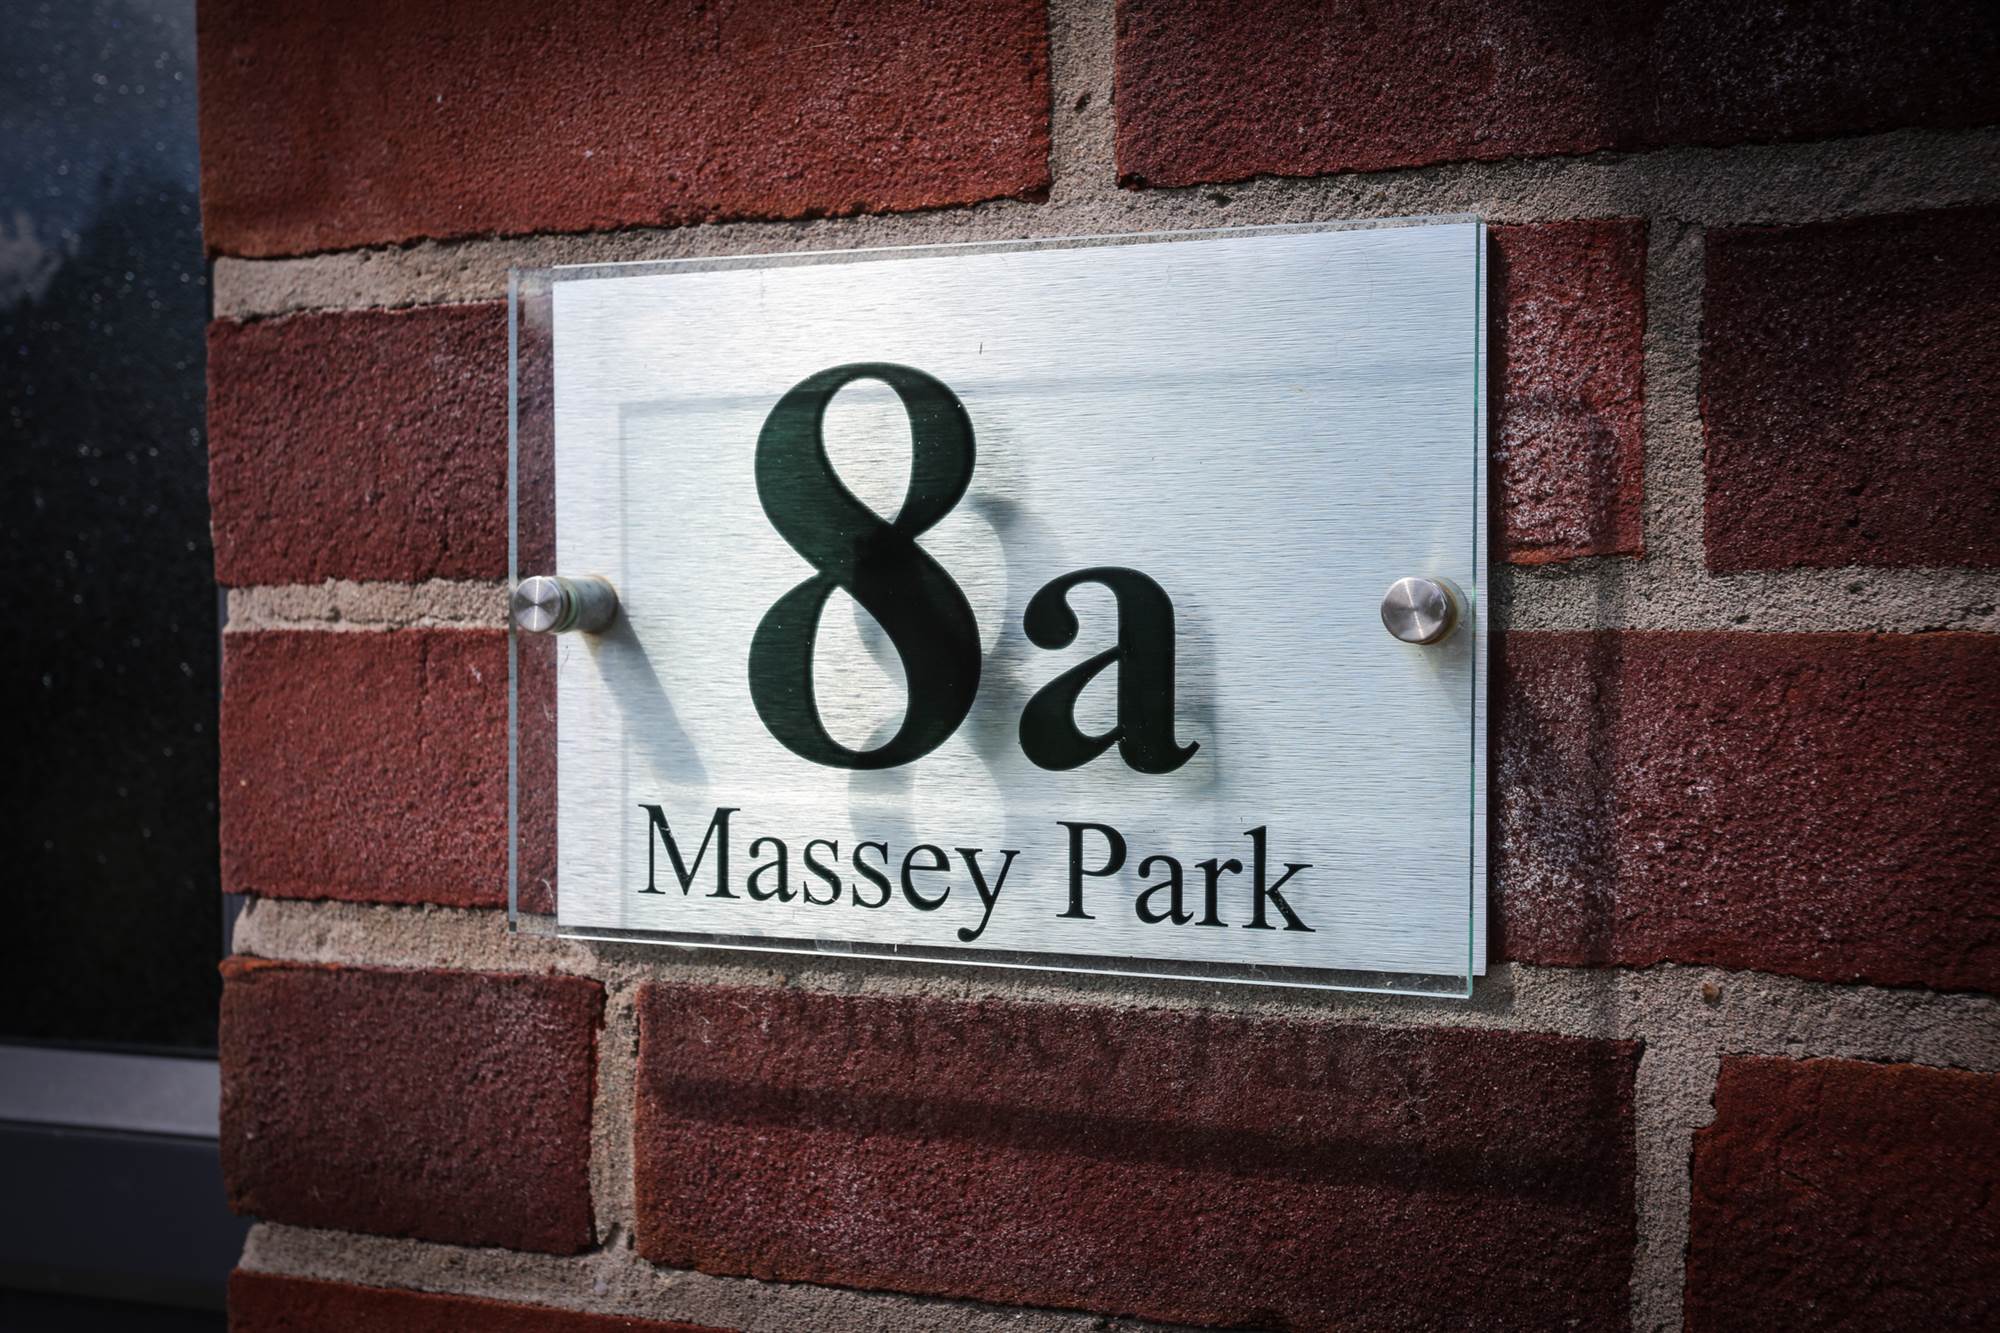 8A Massey Park